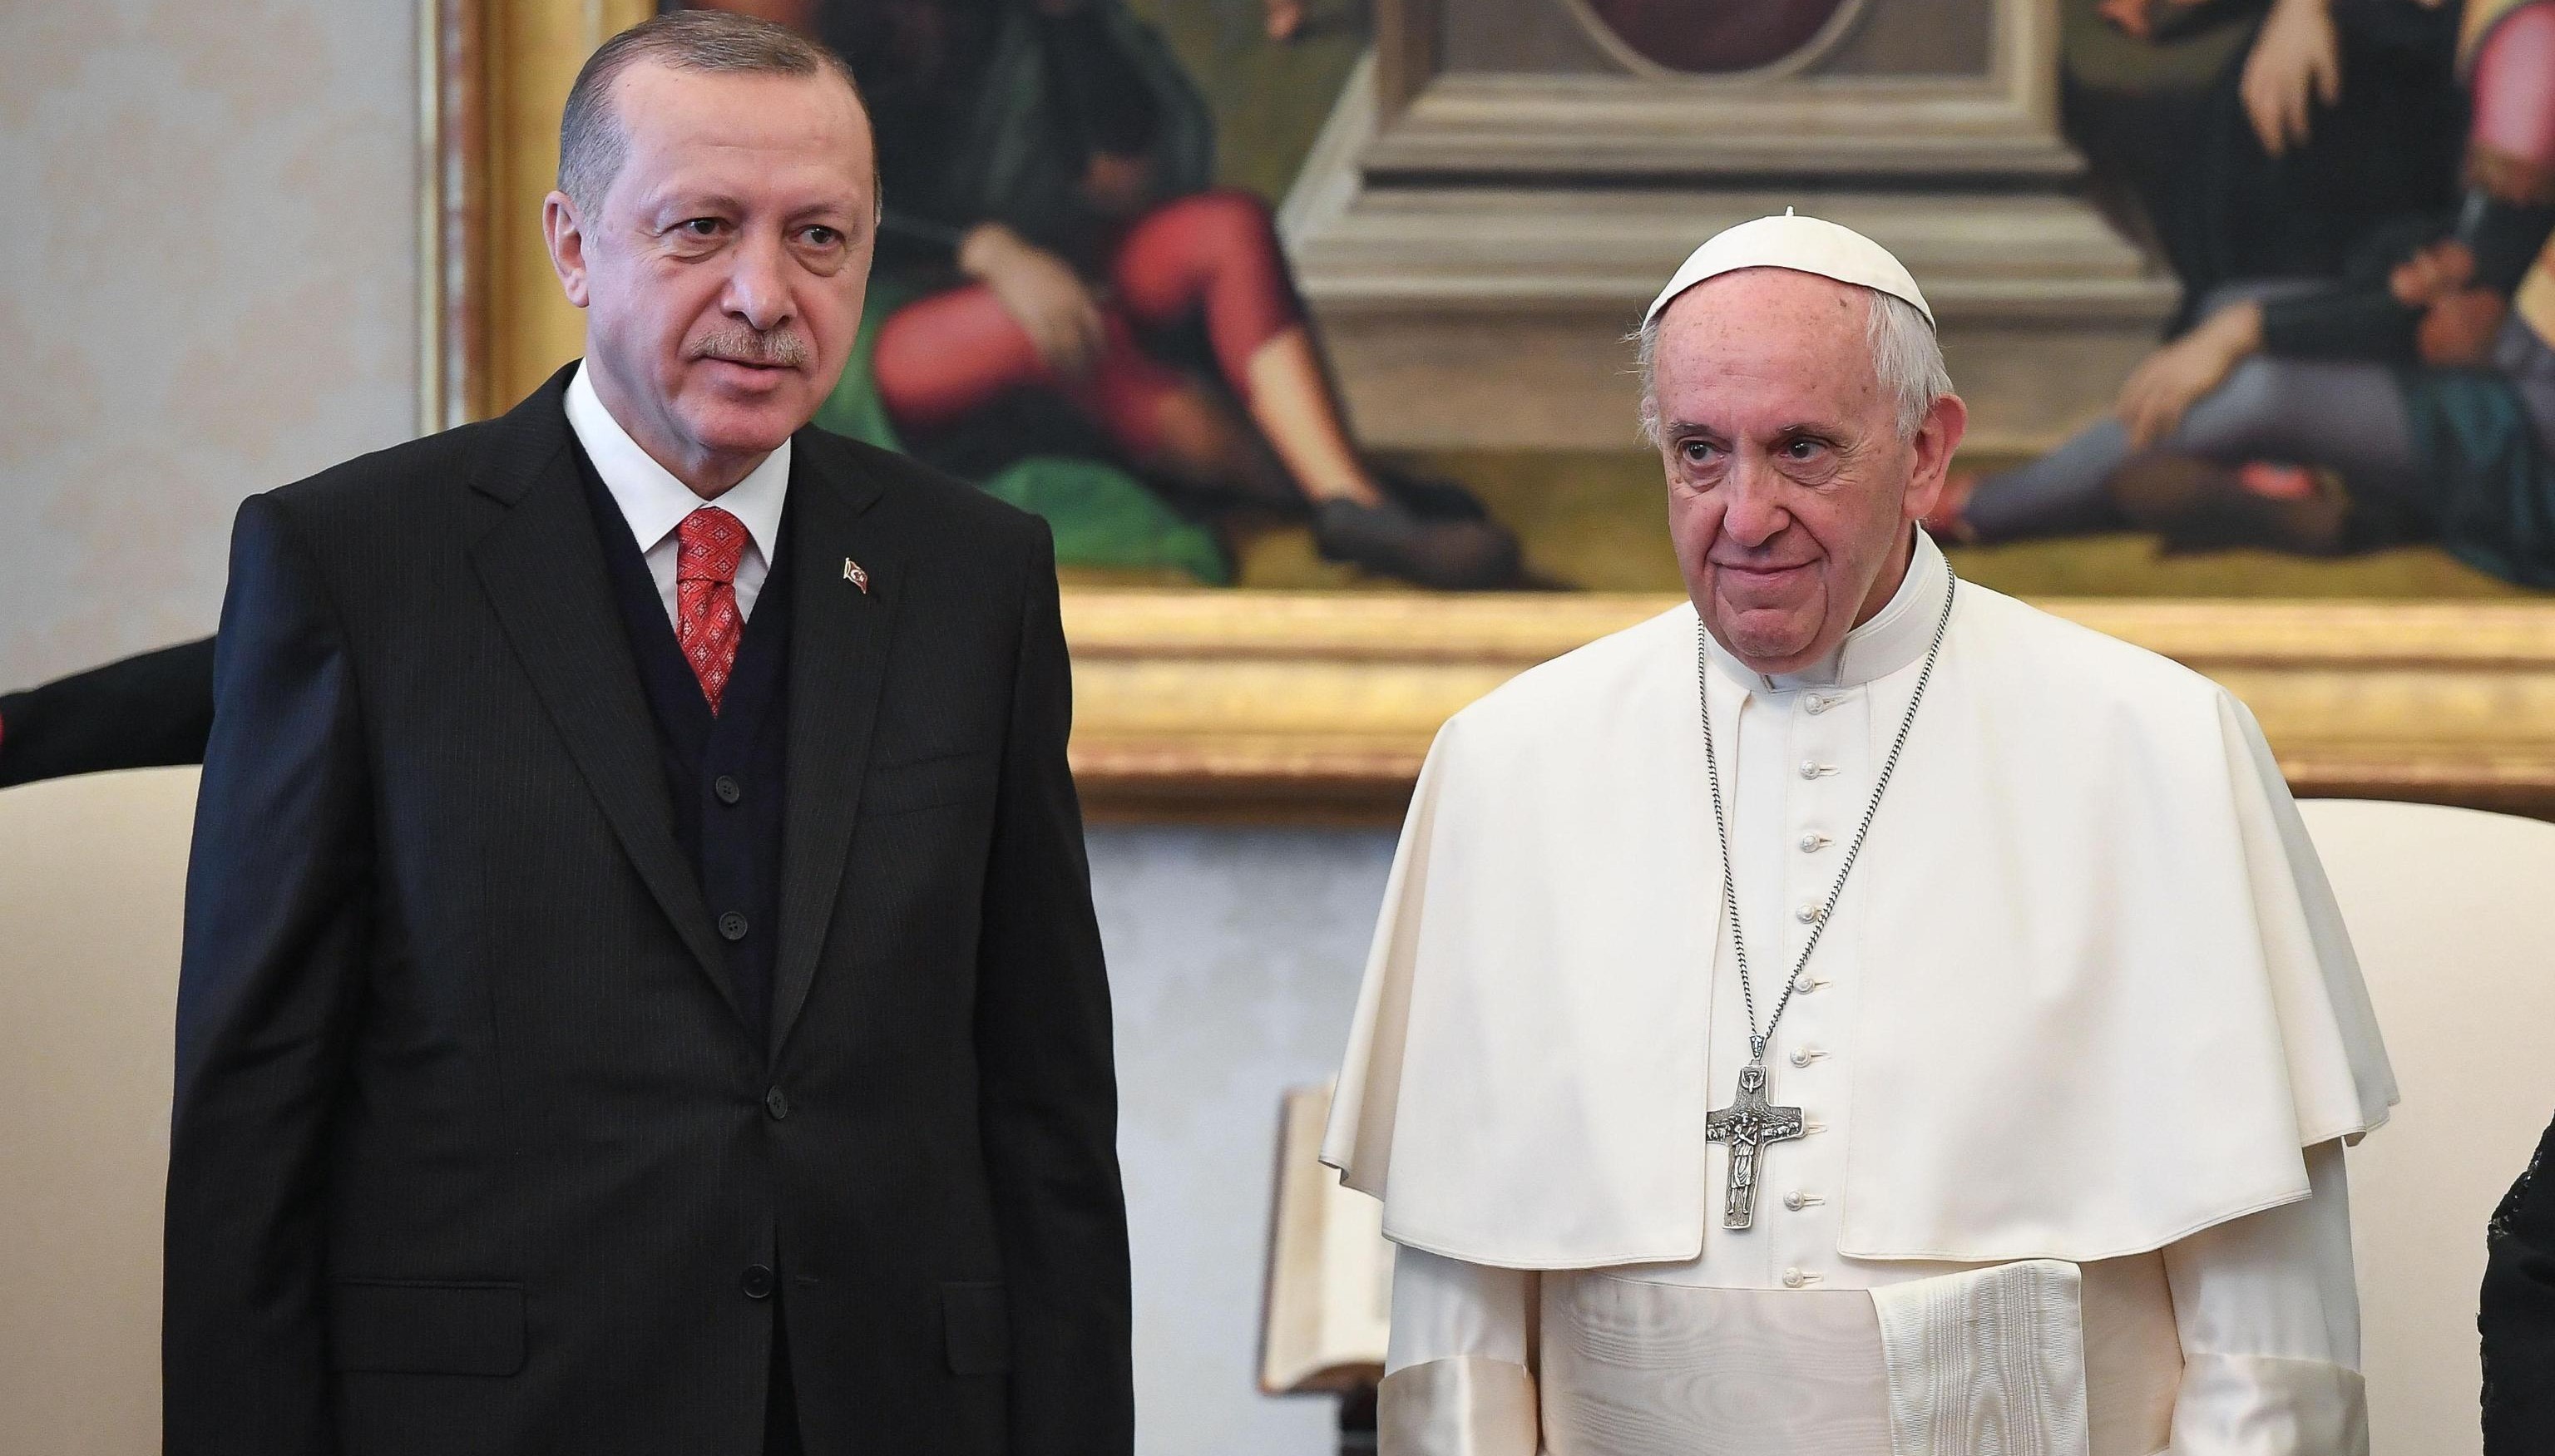 Il presidente turco e il pontefice in posa davanti ai fotografi